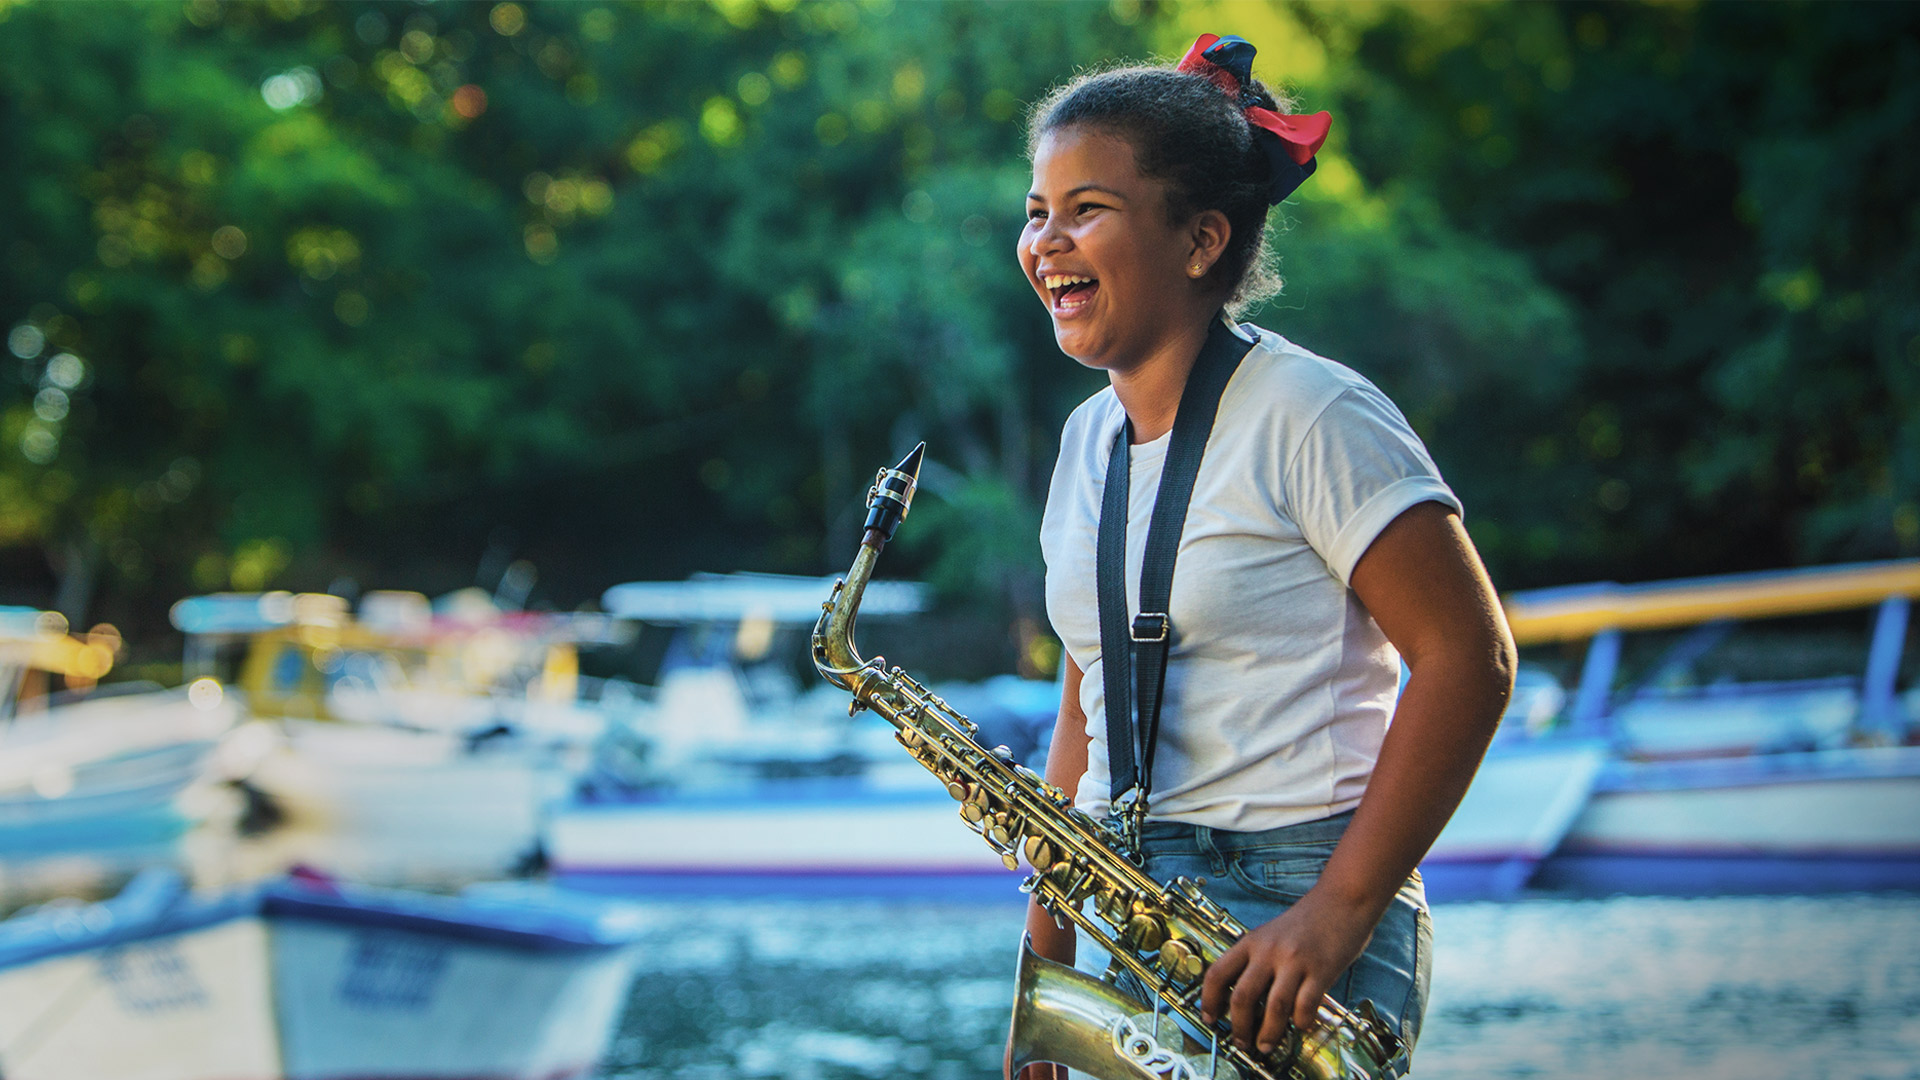 REPÚBLICA DOMINICANA: Escuelas Libres: La música es paz y alegría